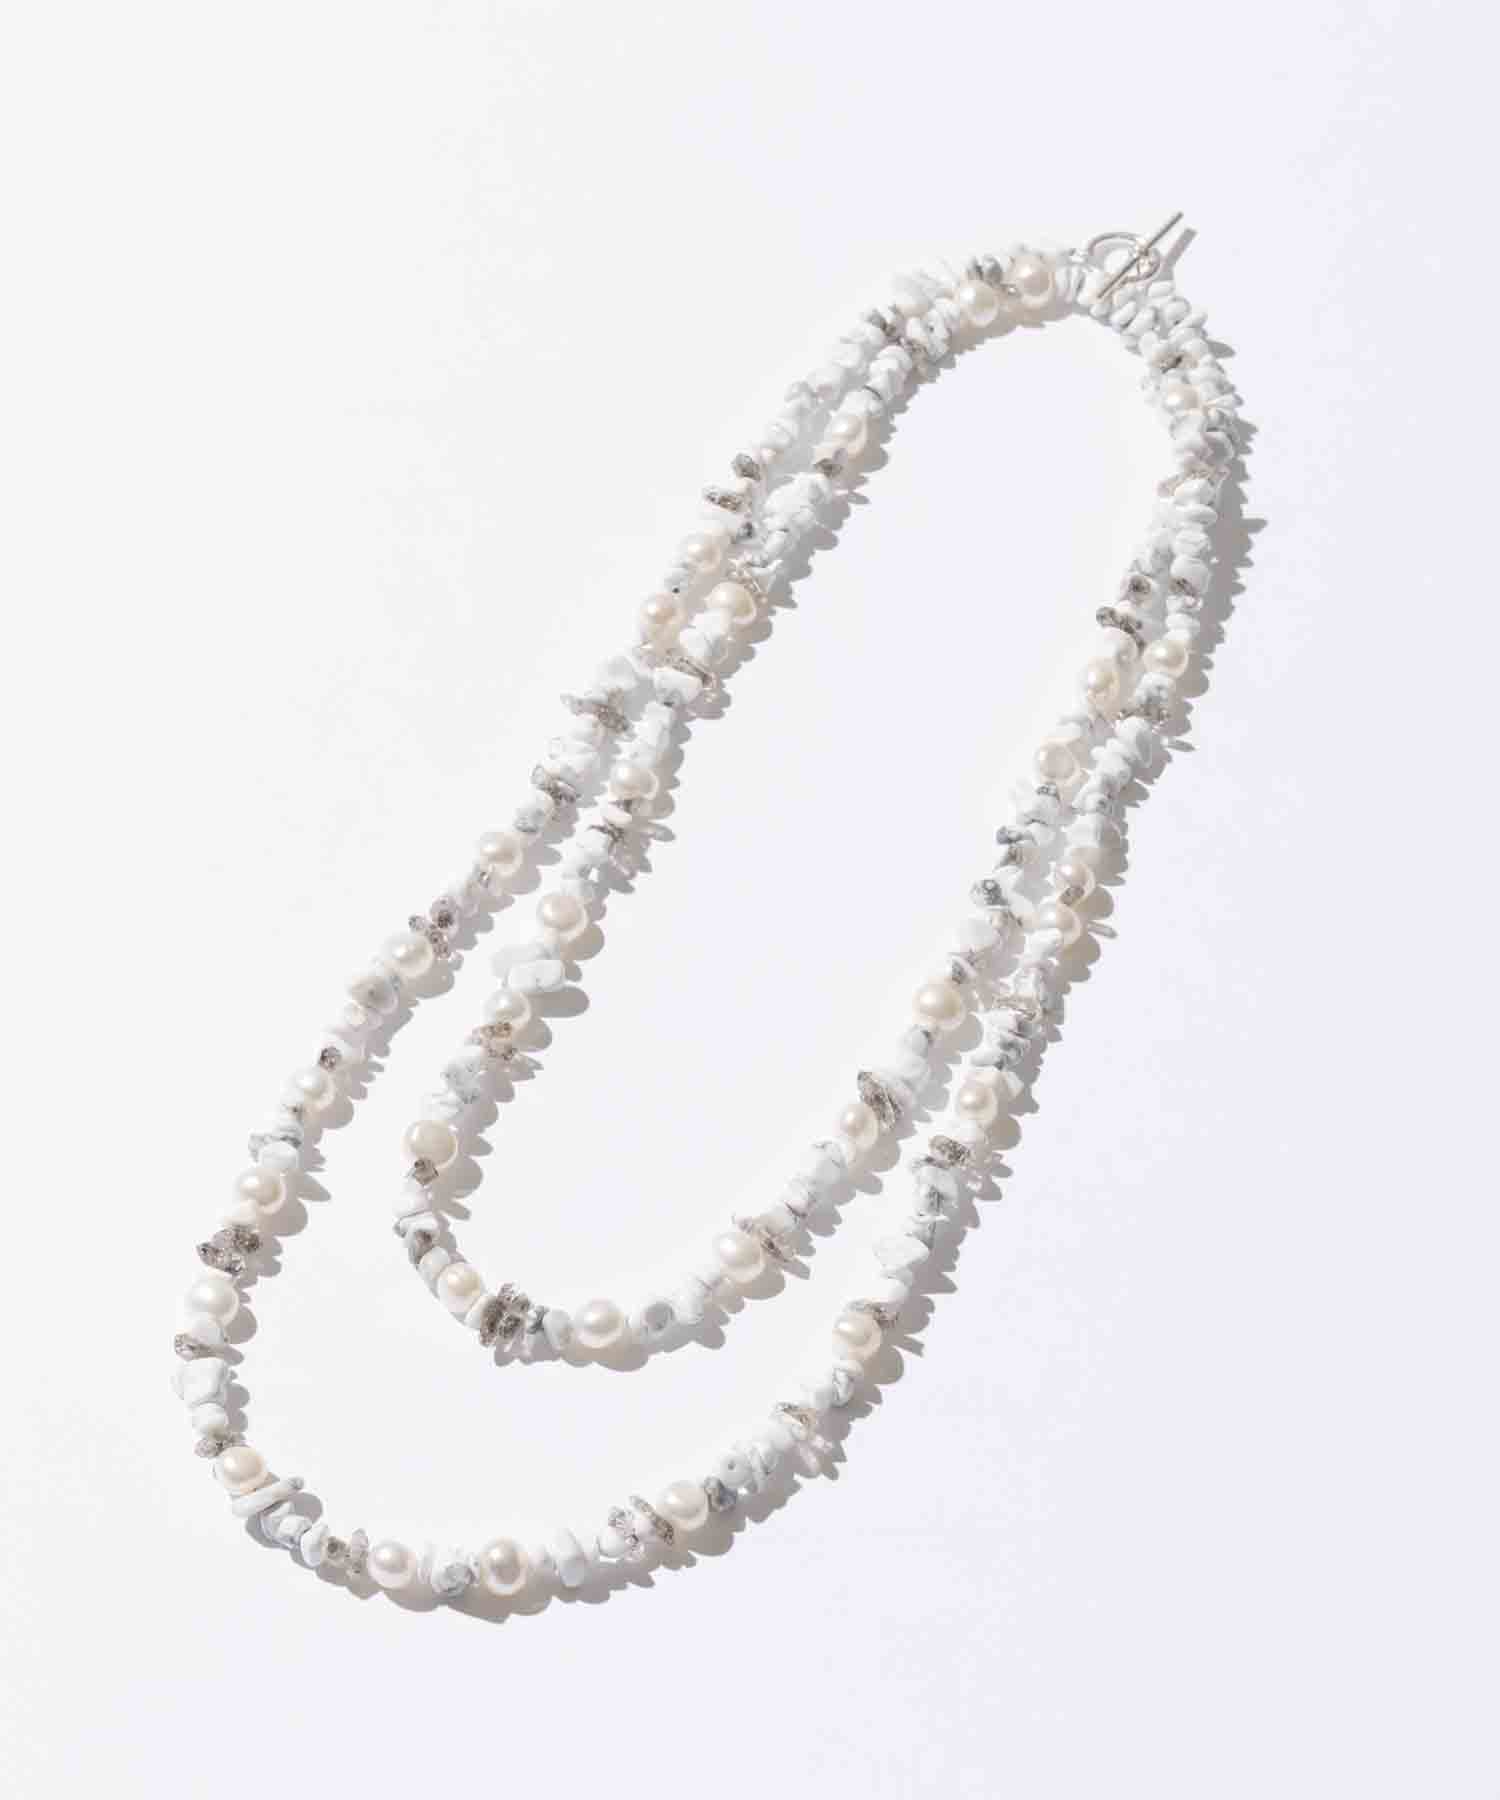 Haulite mixed necklace 120cm